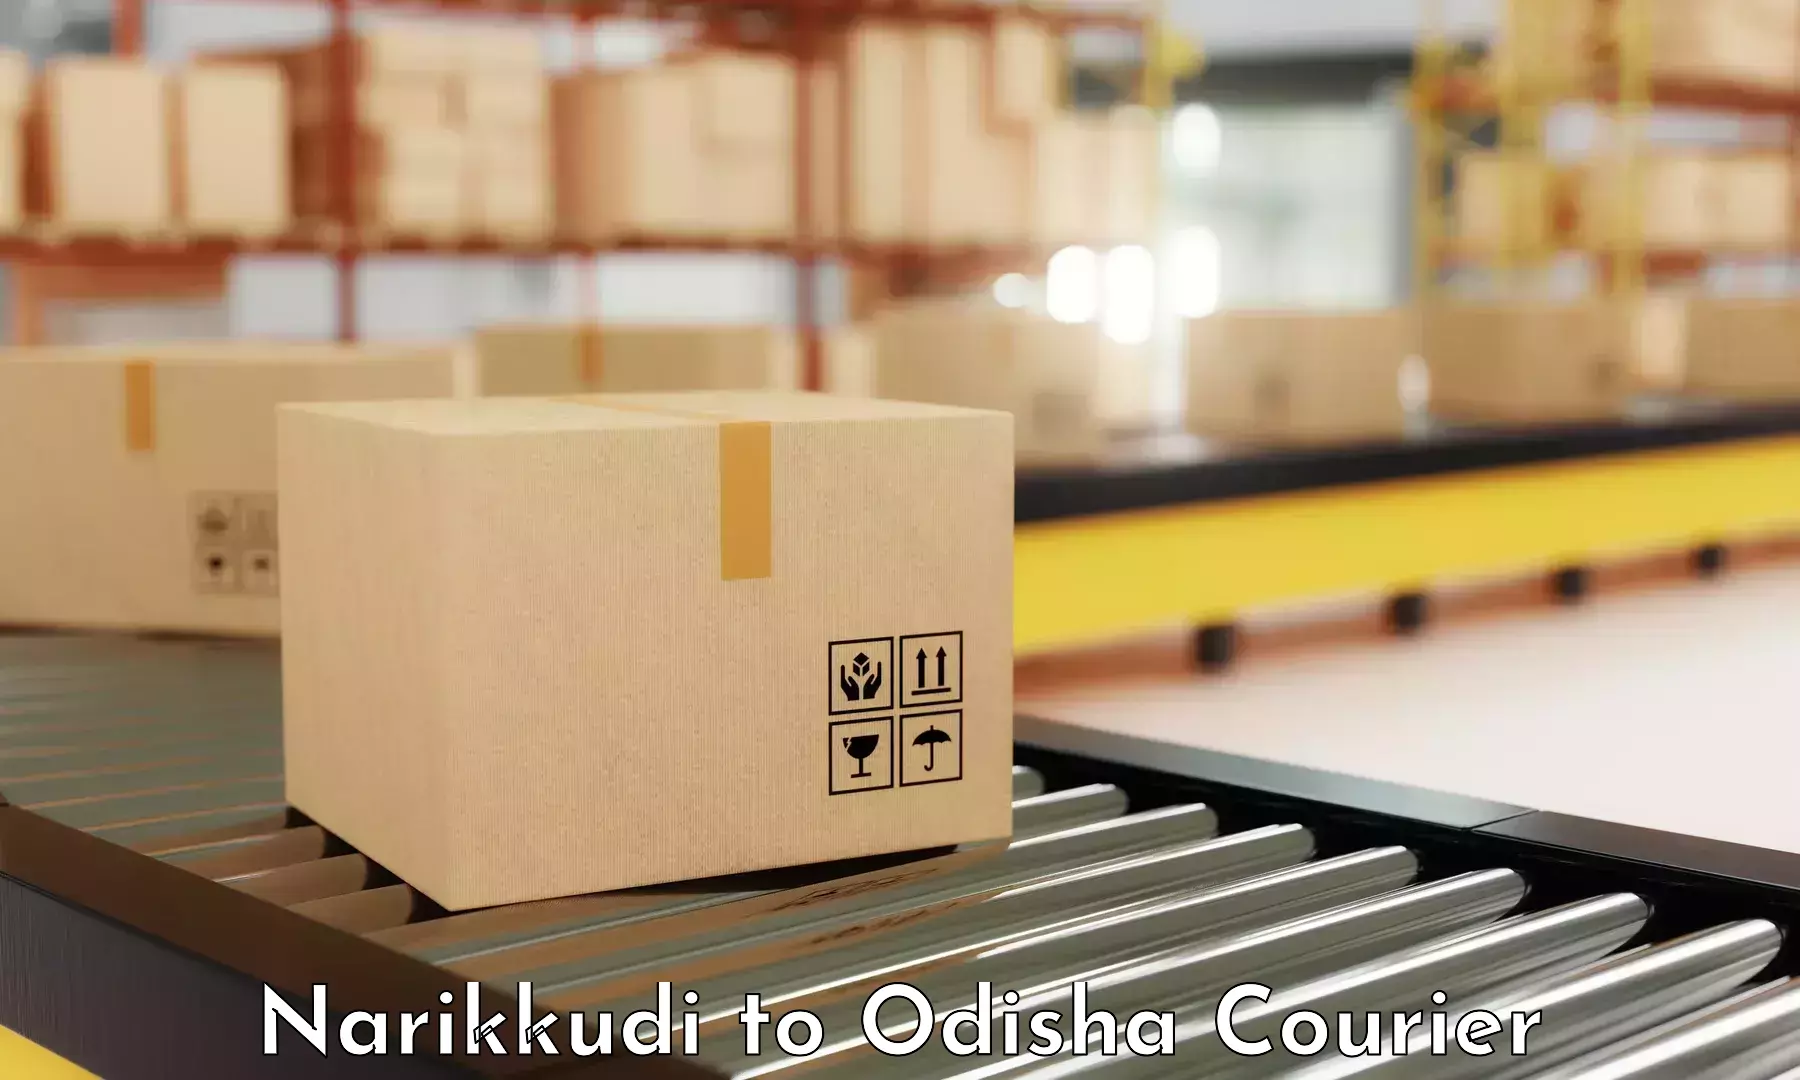 Flexible shipping options in Narikkudi to Dunguripali